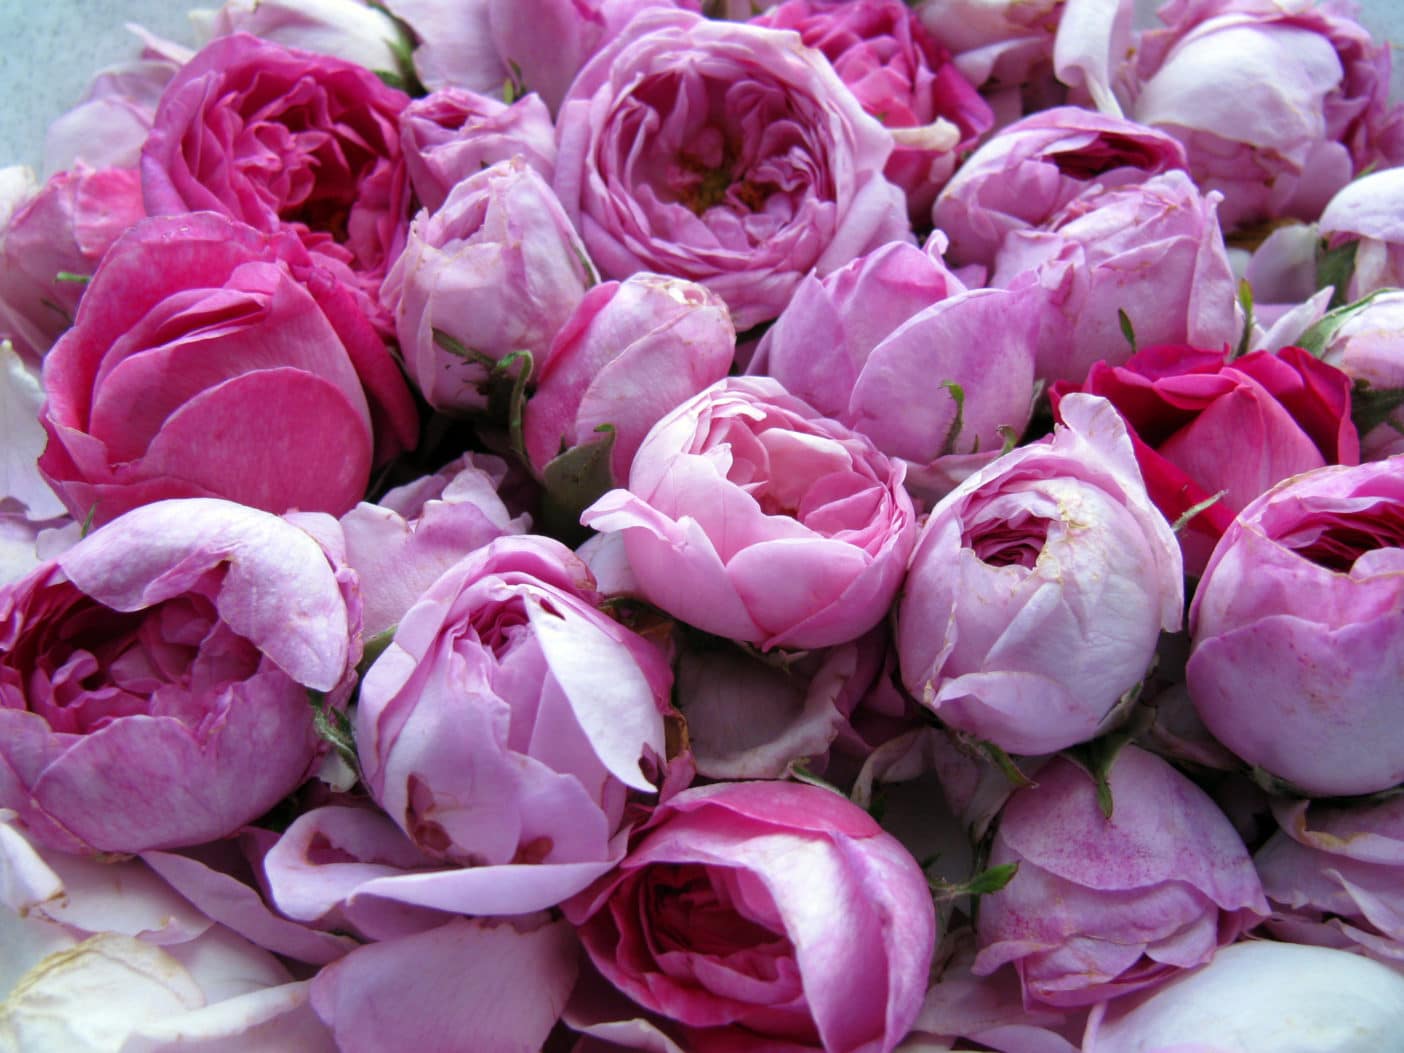 Rosa Multiflora Flower Wax, die edle Alternative für Sheabutter